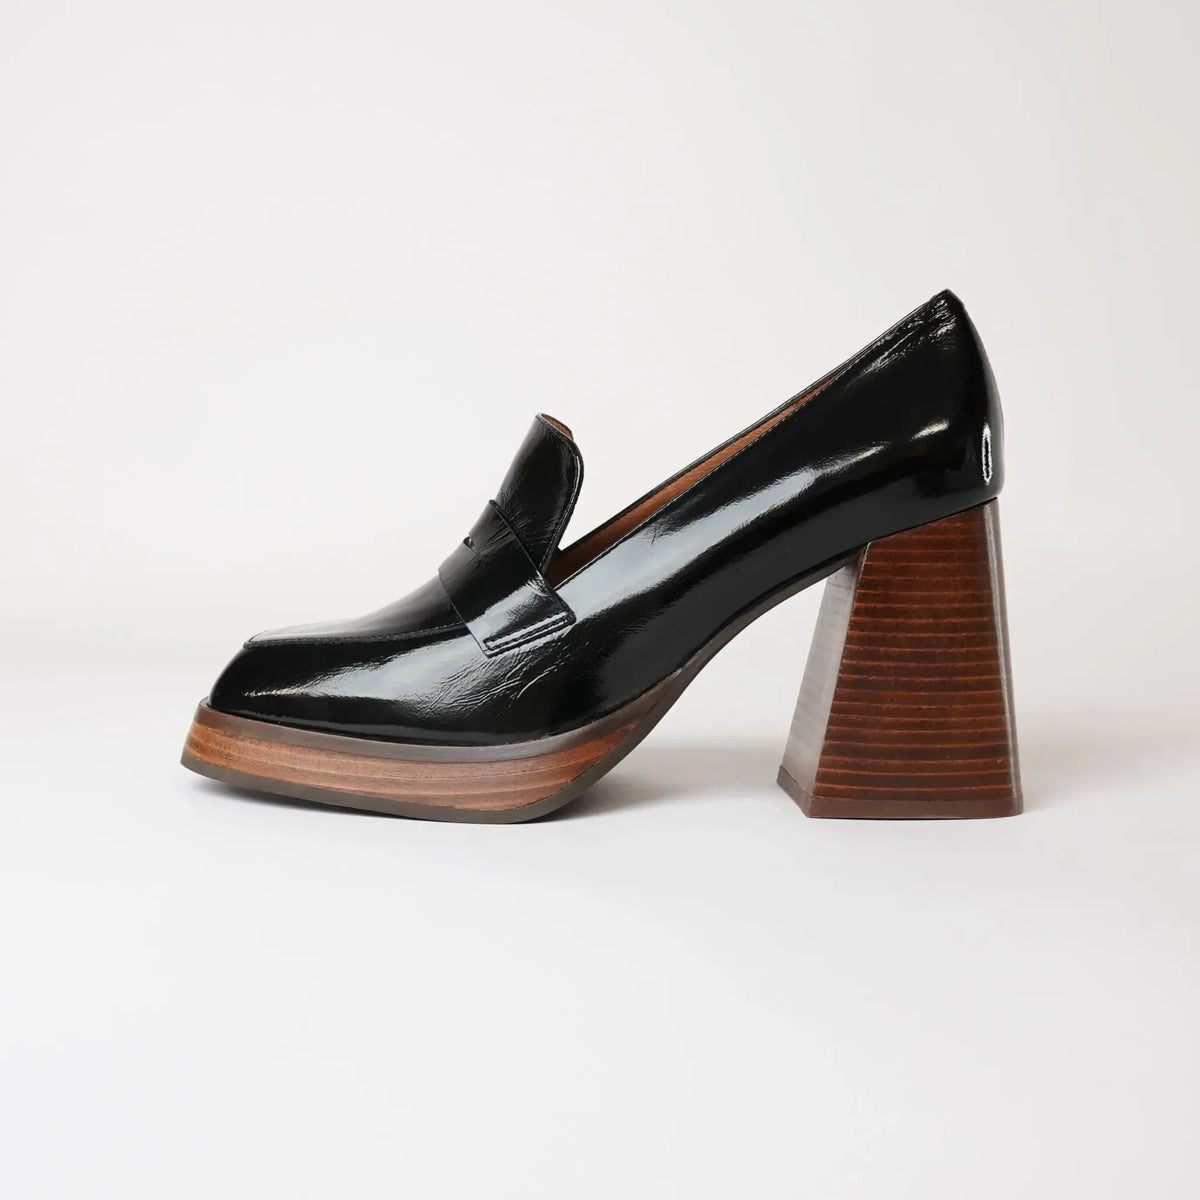 Ag-23572 Black Leather Heels